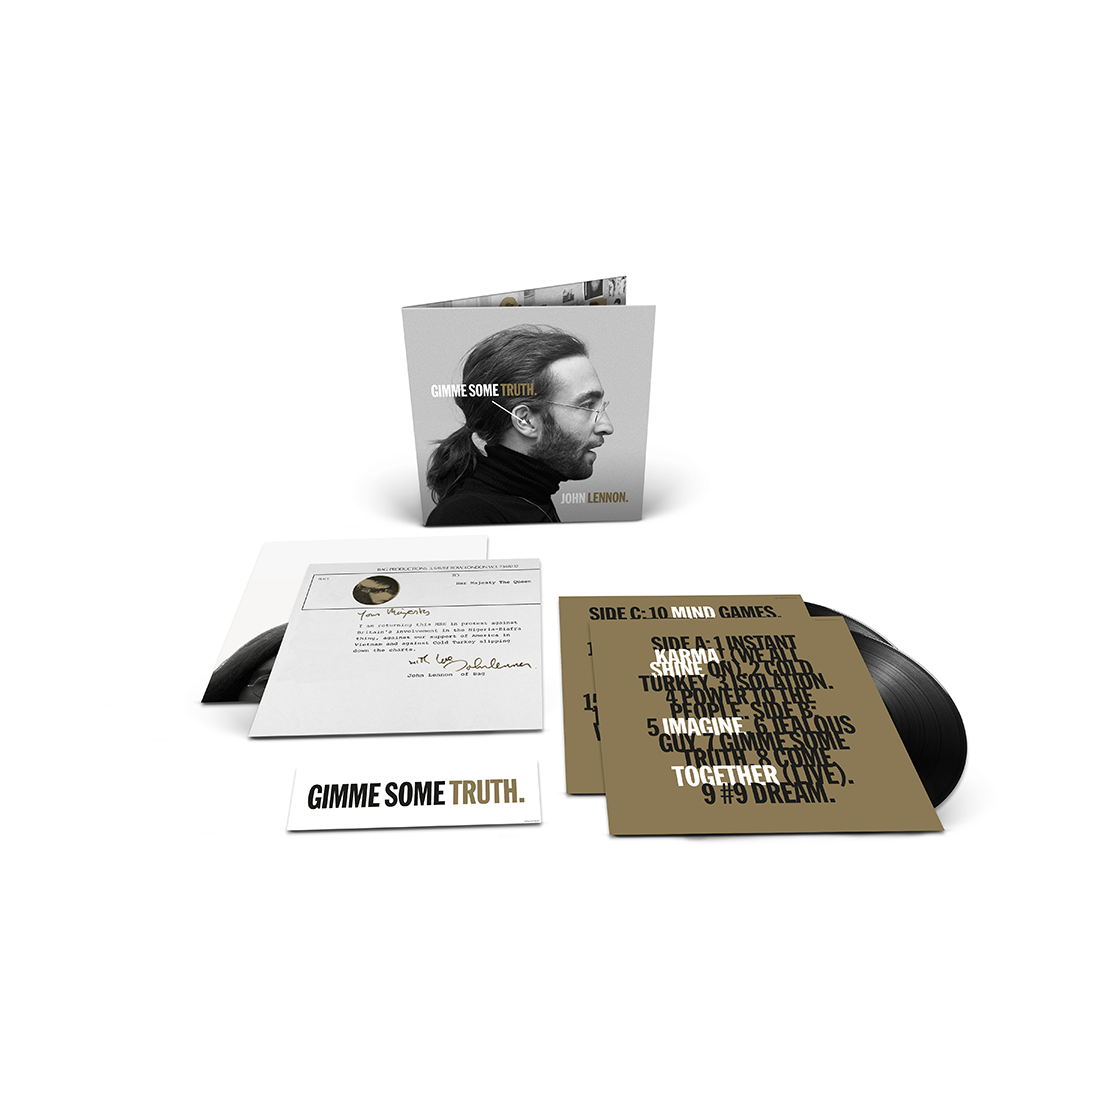 John Lennon, Yoko Ono - GIMME SOME TRUTH. Deluxe Vinyl 2LP